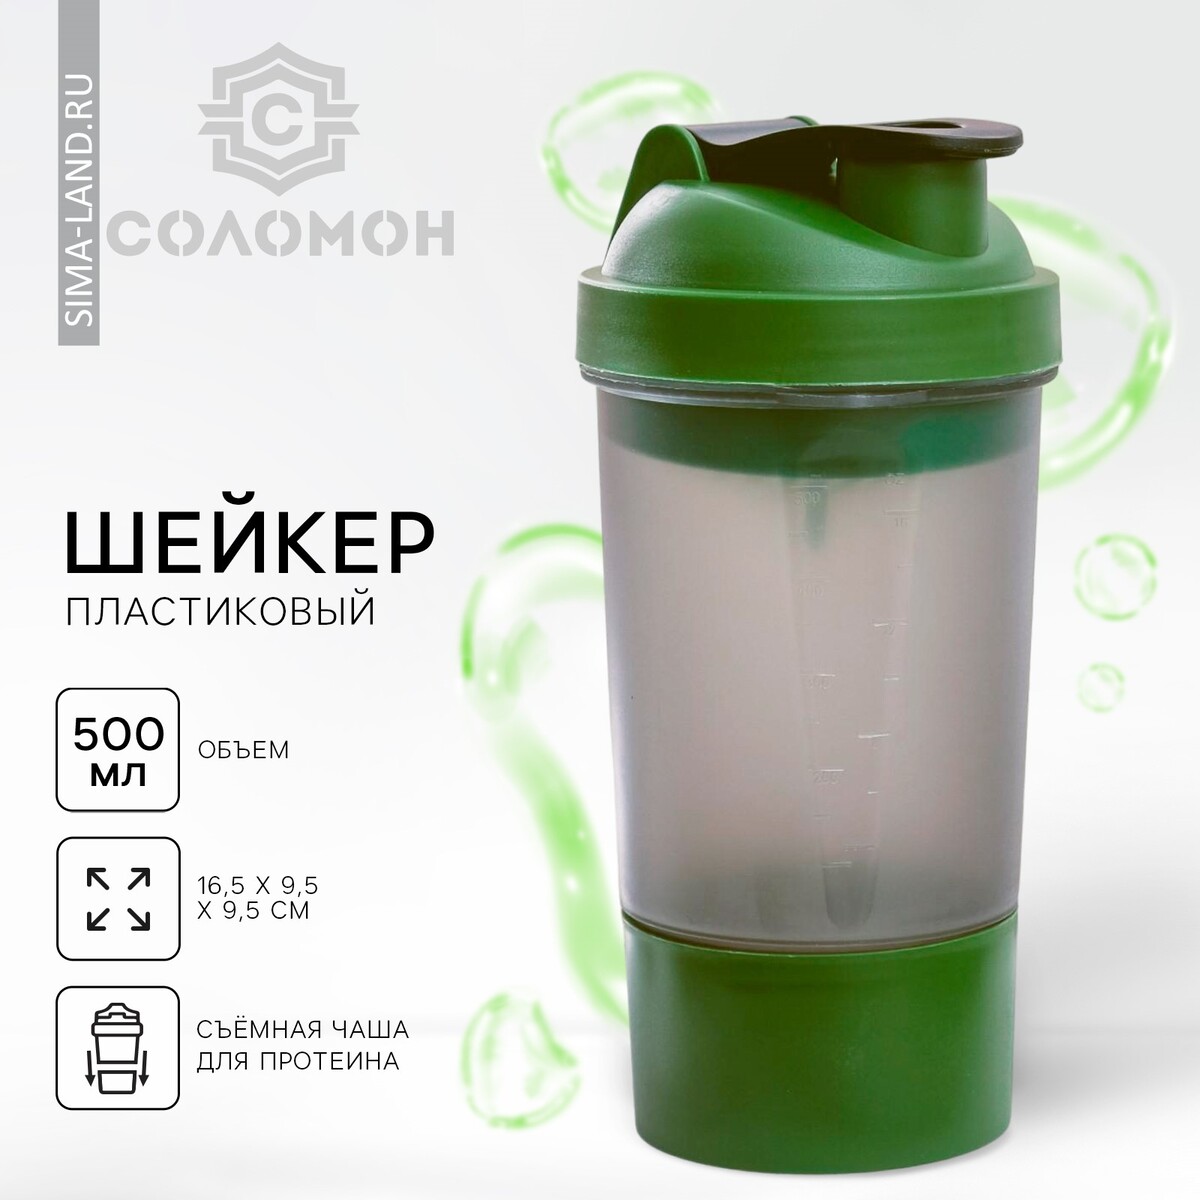 Шейкер спортивный с чашей под протеин, серо-зеленый, 500 мл костюм спортивный